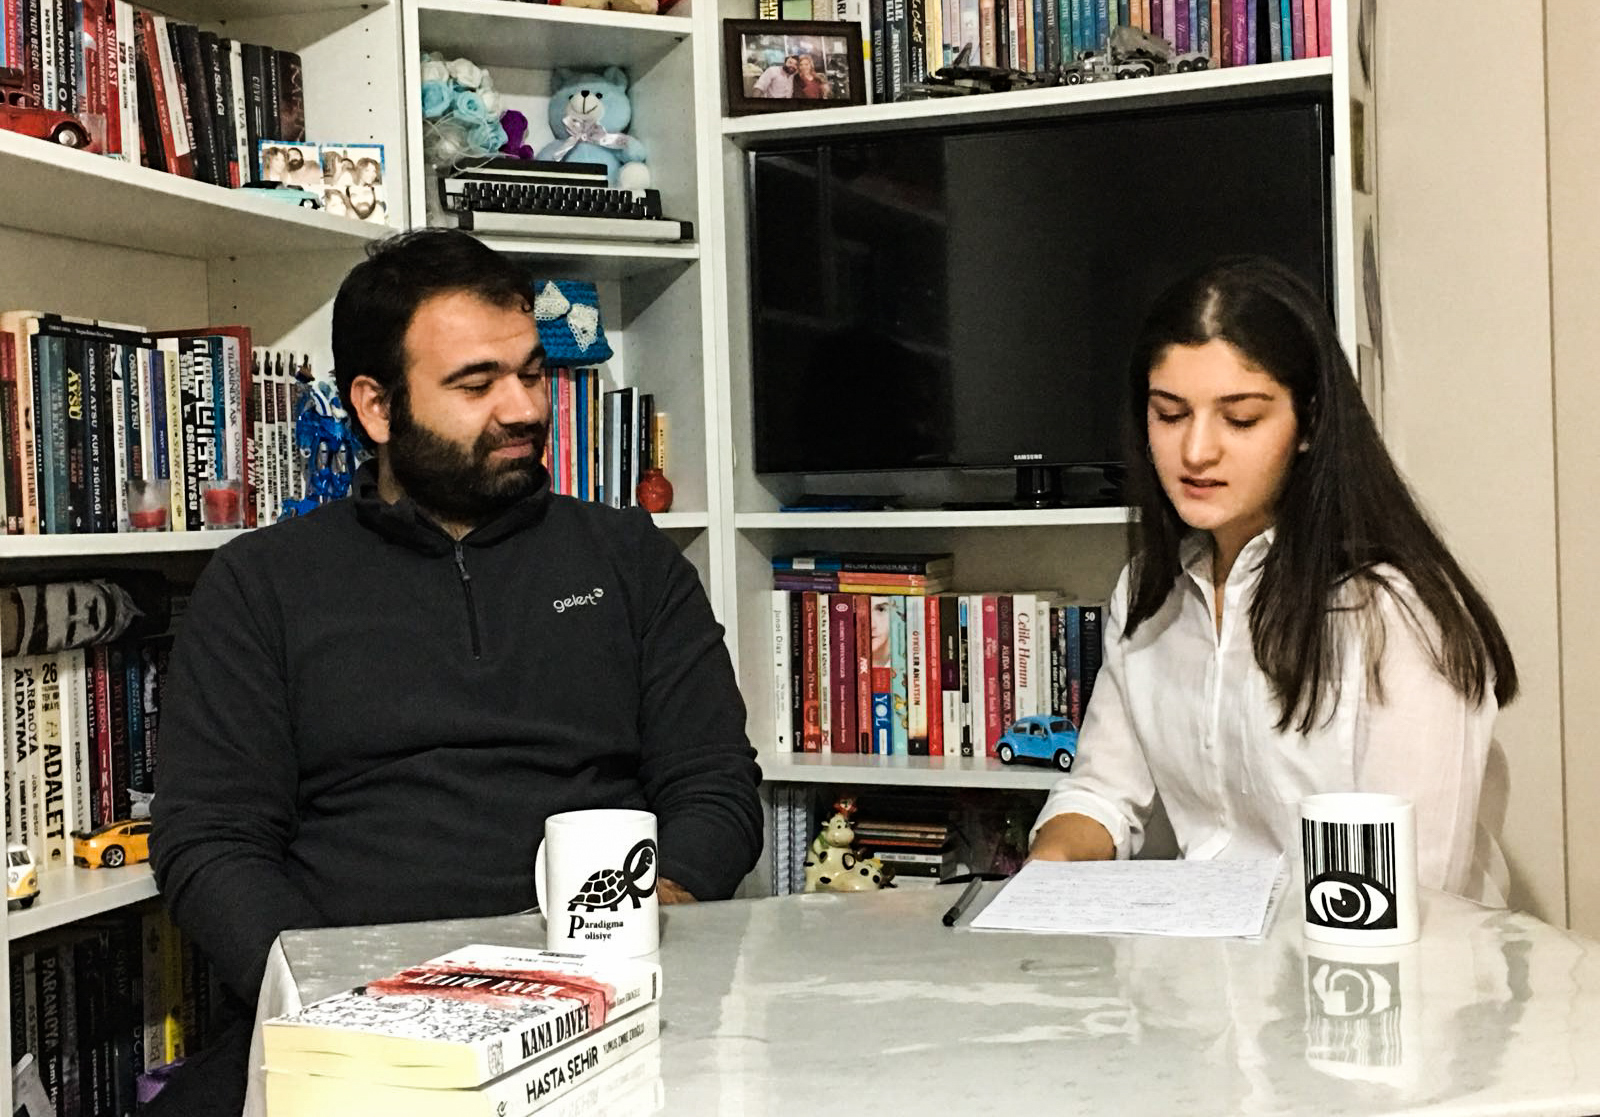 ÇOMÜ Fiktifalem Edebiyat Klubü için Editörüm Rabia Soğan ile yaptığımız röportajdan bir kare.jpg